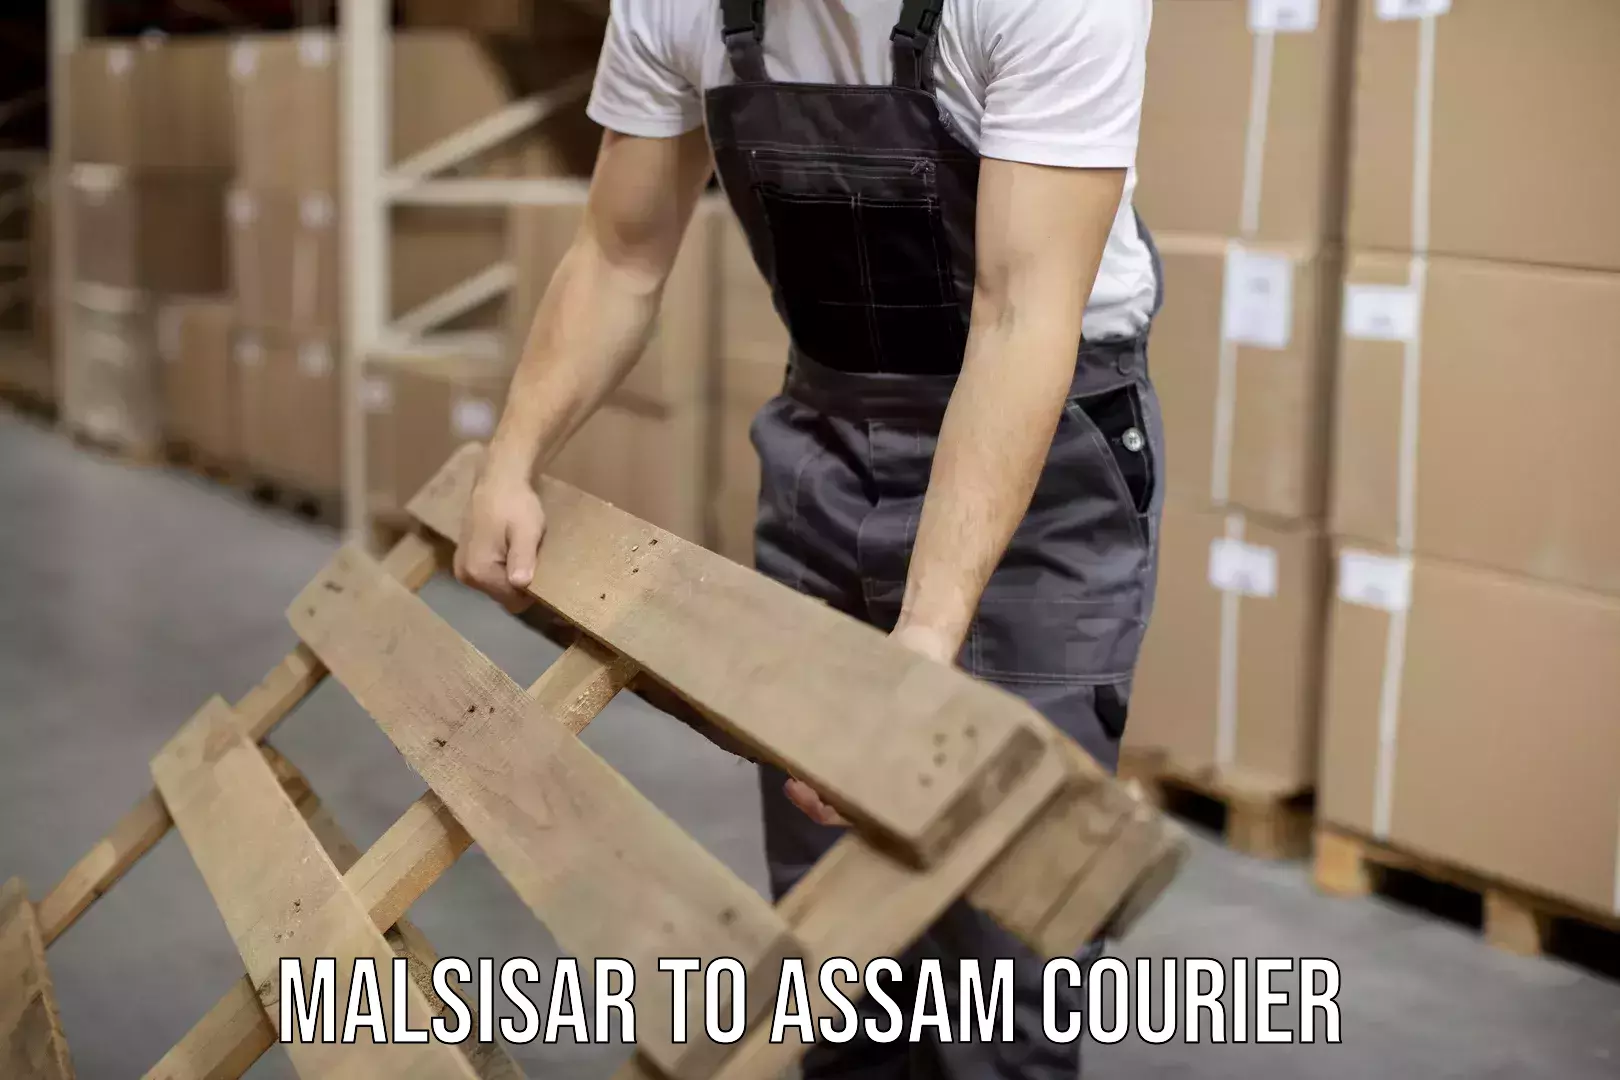 Courier service partnerships Malsisar to Sivasagar